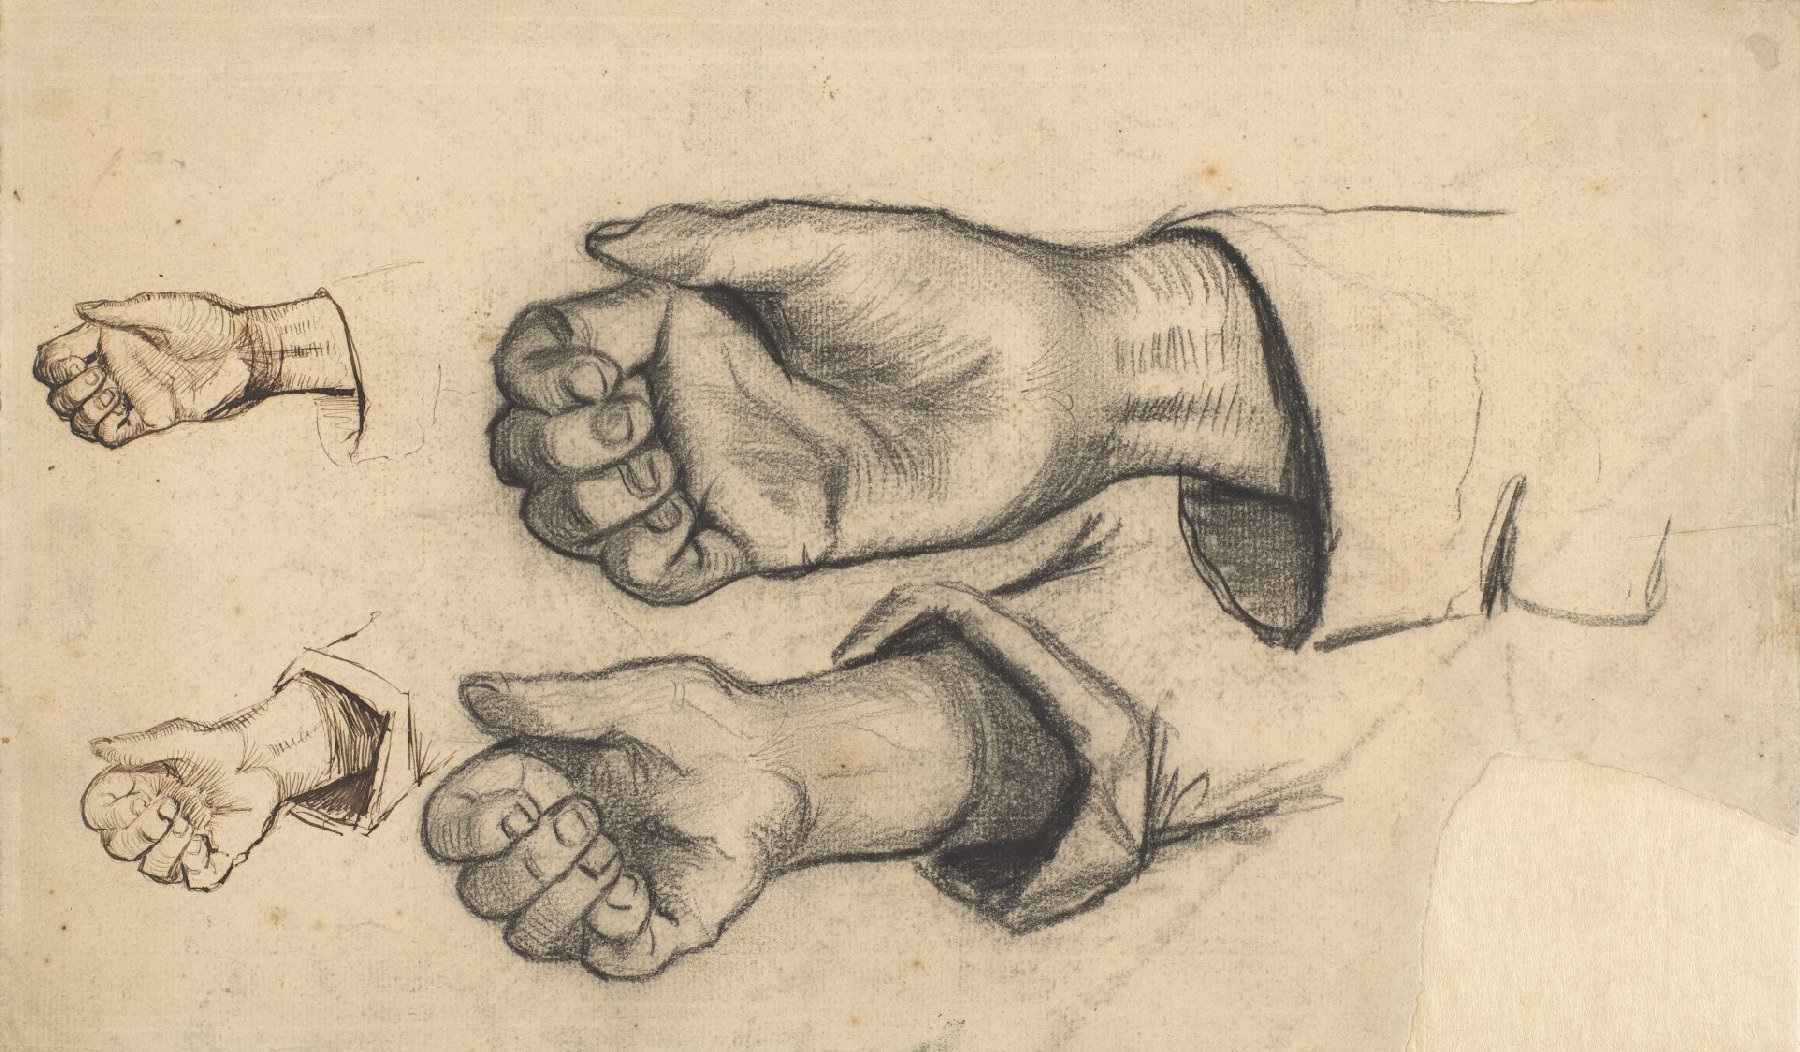 Vier handen Vincent van Gogh (1853 - 1890), Nuenen, december 1884-mei 1885